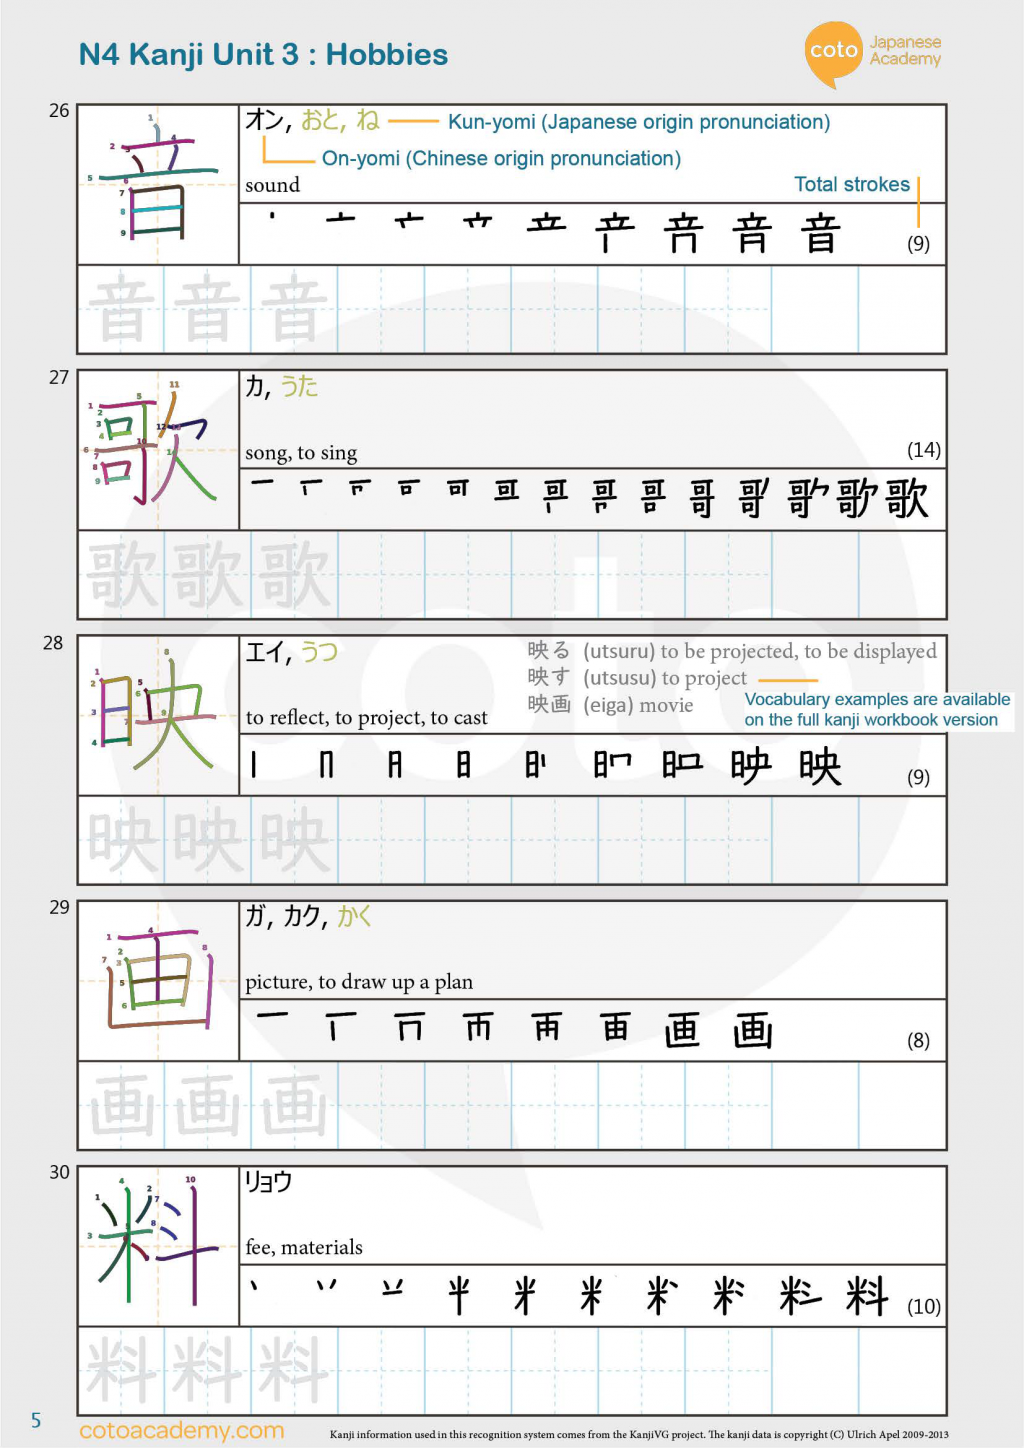 kanji practice worksheet free download jlpt n4 kanji unit 3 hobby pdf coto japanese academy